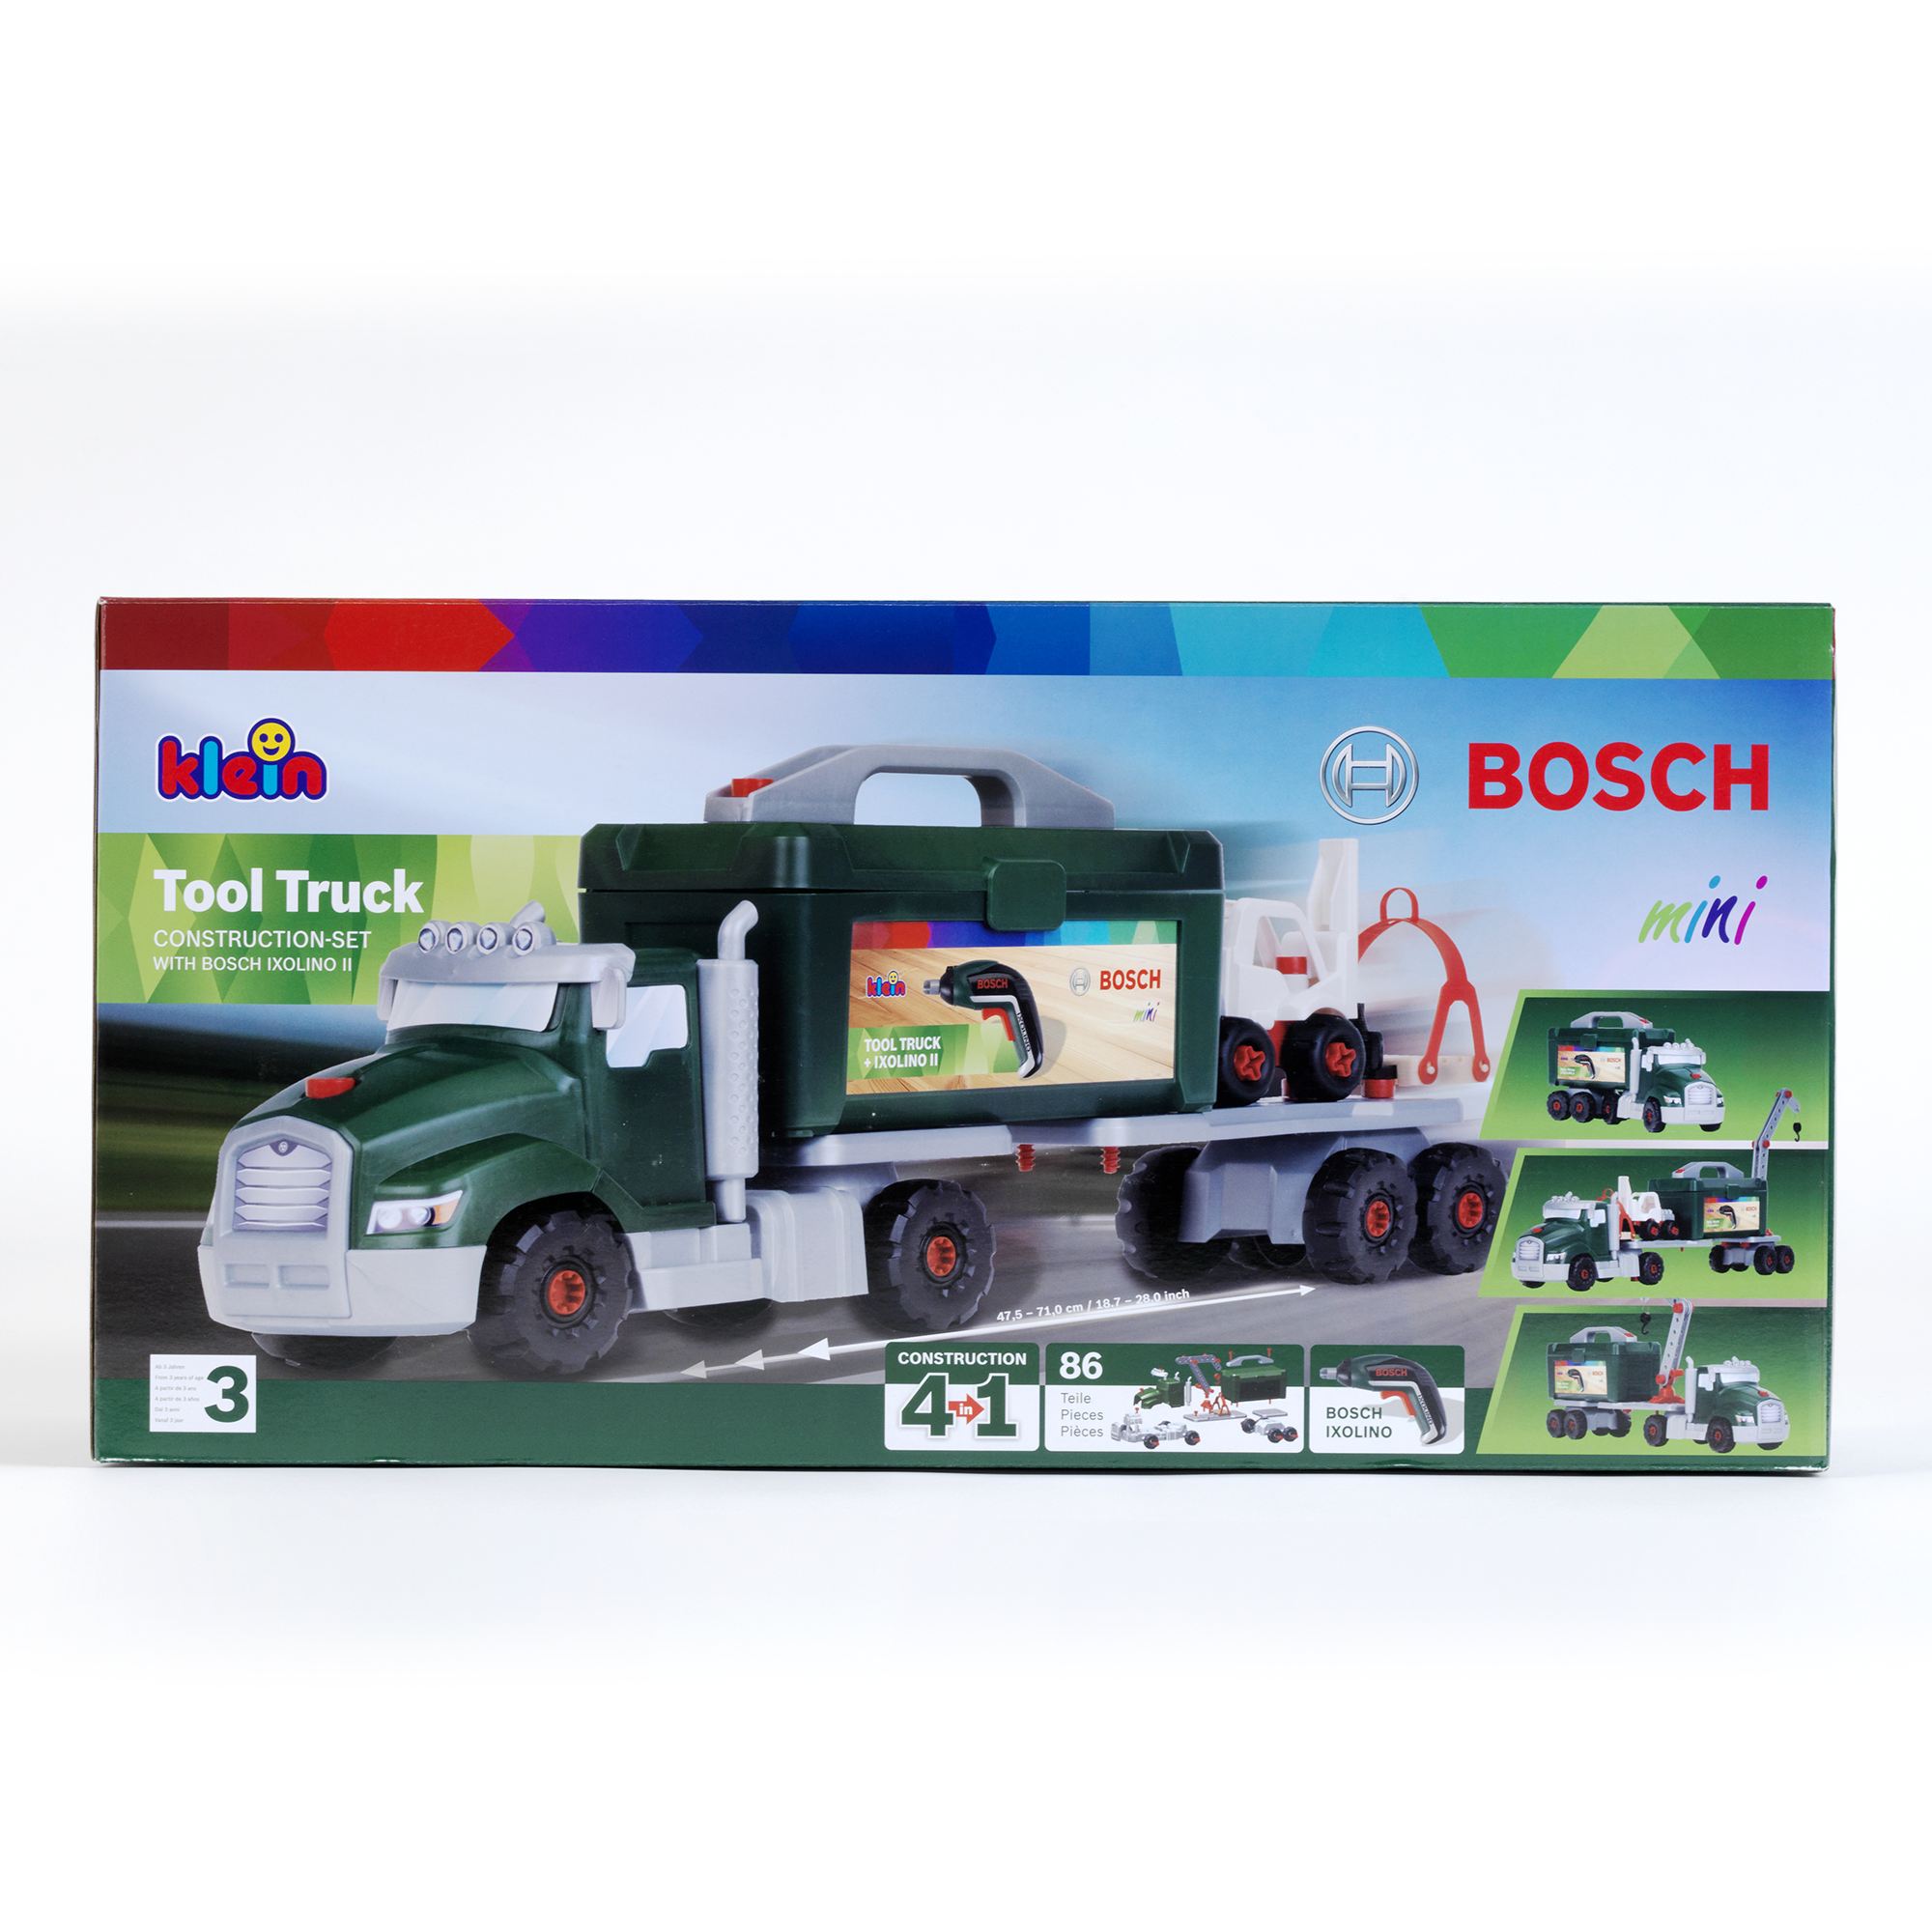 Camion con attrezzi bosch - Bosh